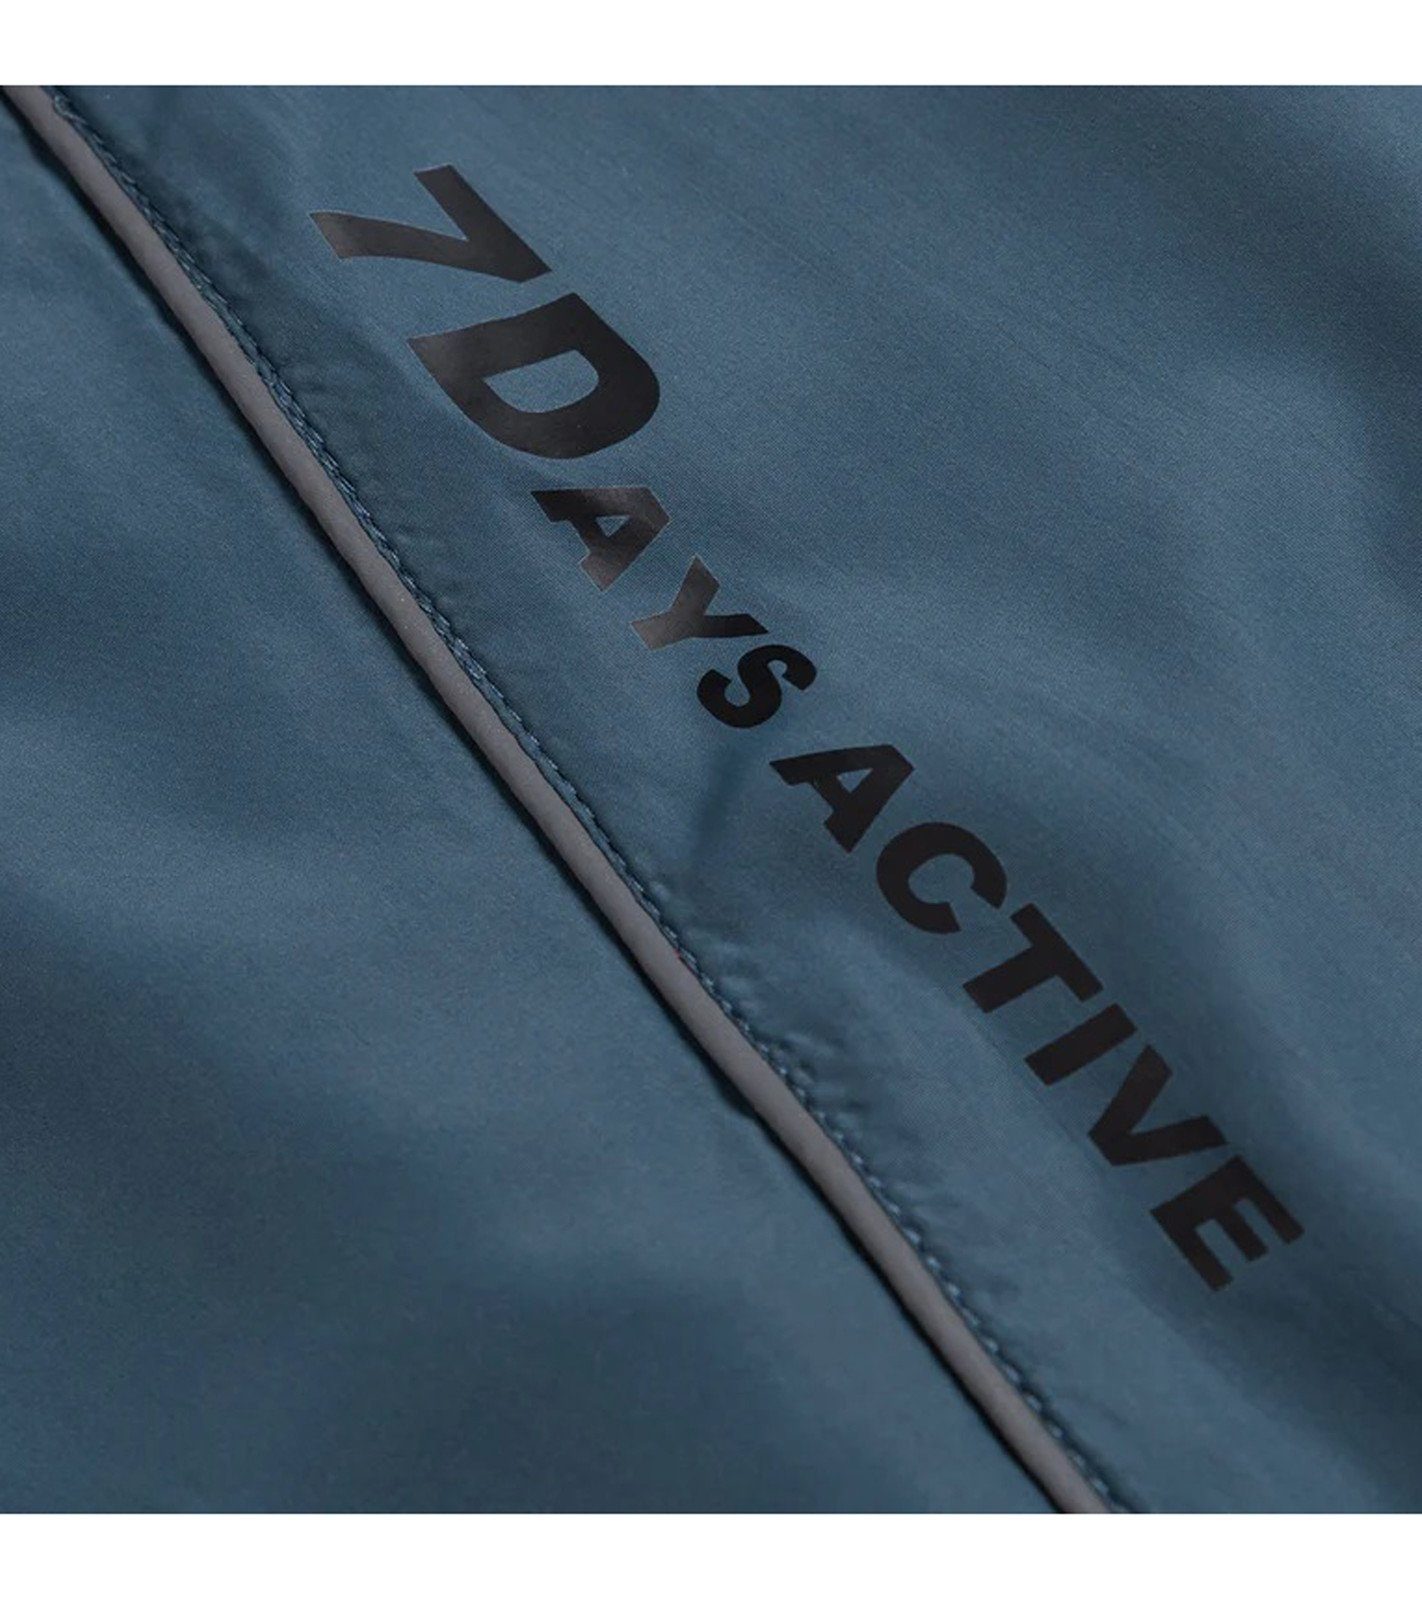 Details mit reflektierenden Active Blau Track Lauf-Jacke 7 Sport-Jacke Trainingsjacke Active Jacket DAYS DAYS Aicot 7